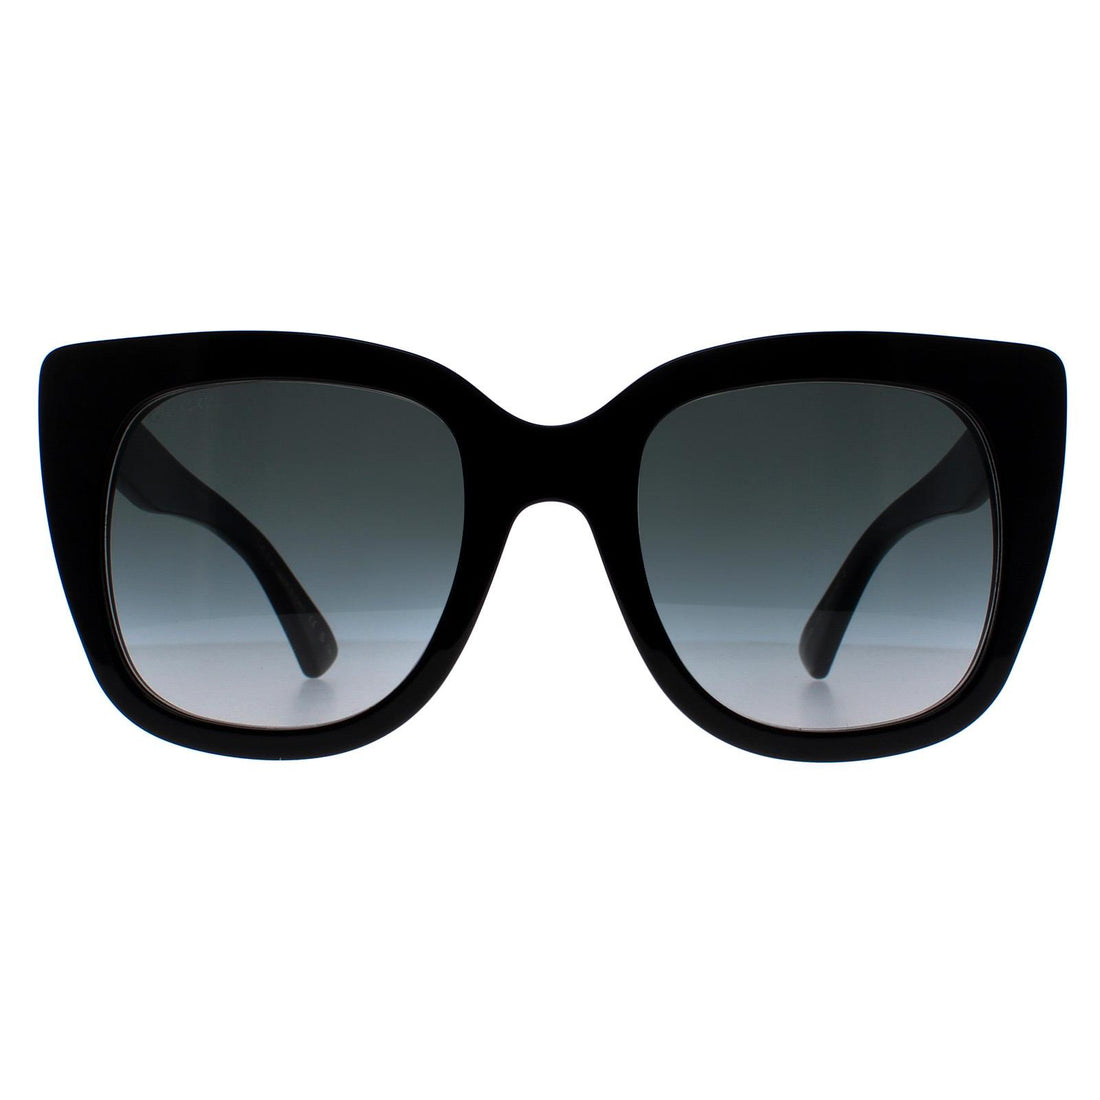 Gucci GG0163S Sunglasses Black / Grey Gradient